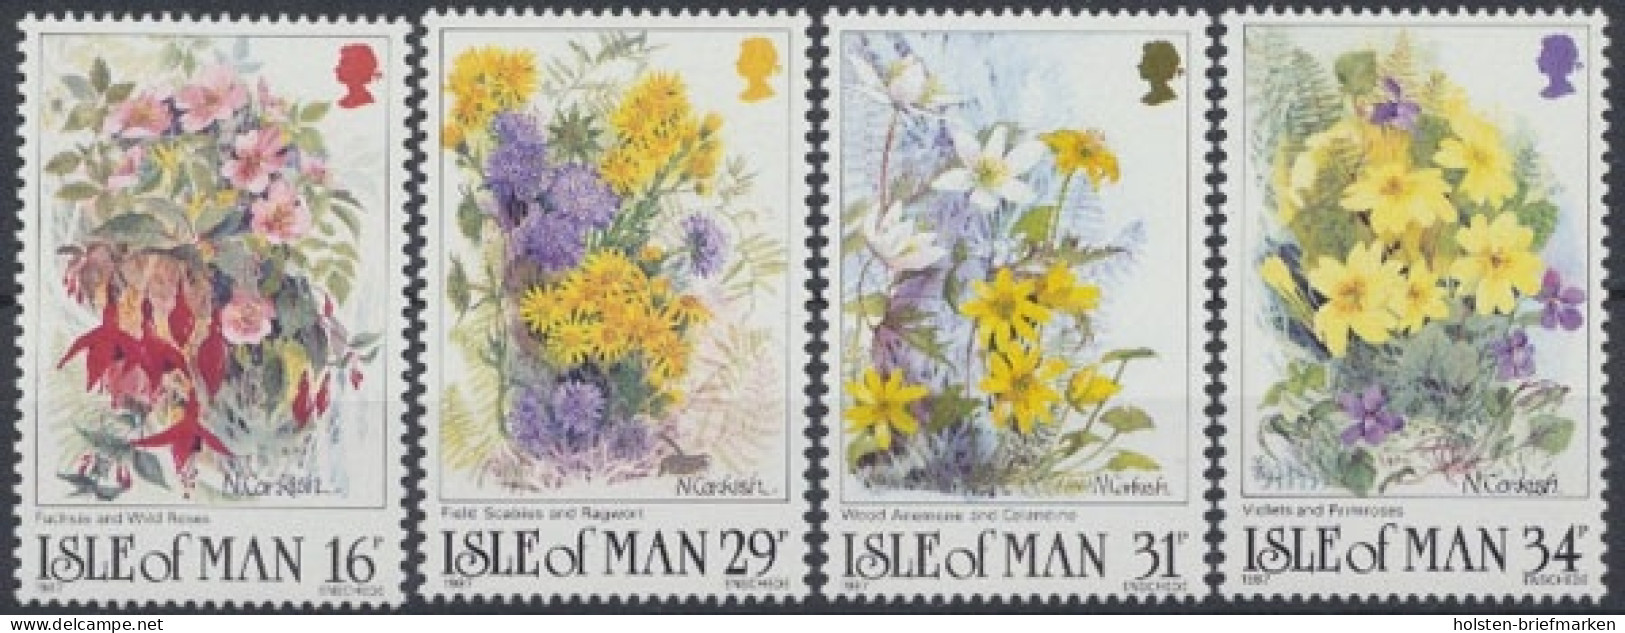 Insel Man, Michel Nr. 344-347, Postfrisch / MNH - Isla De Man